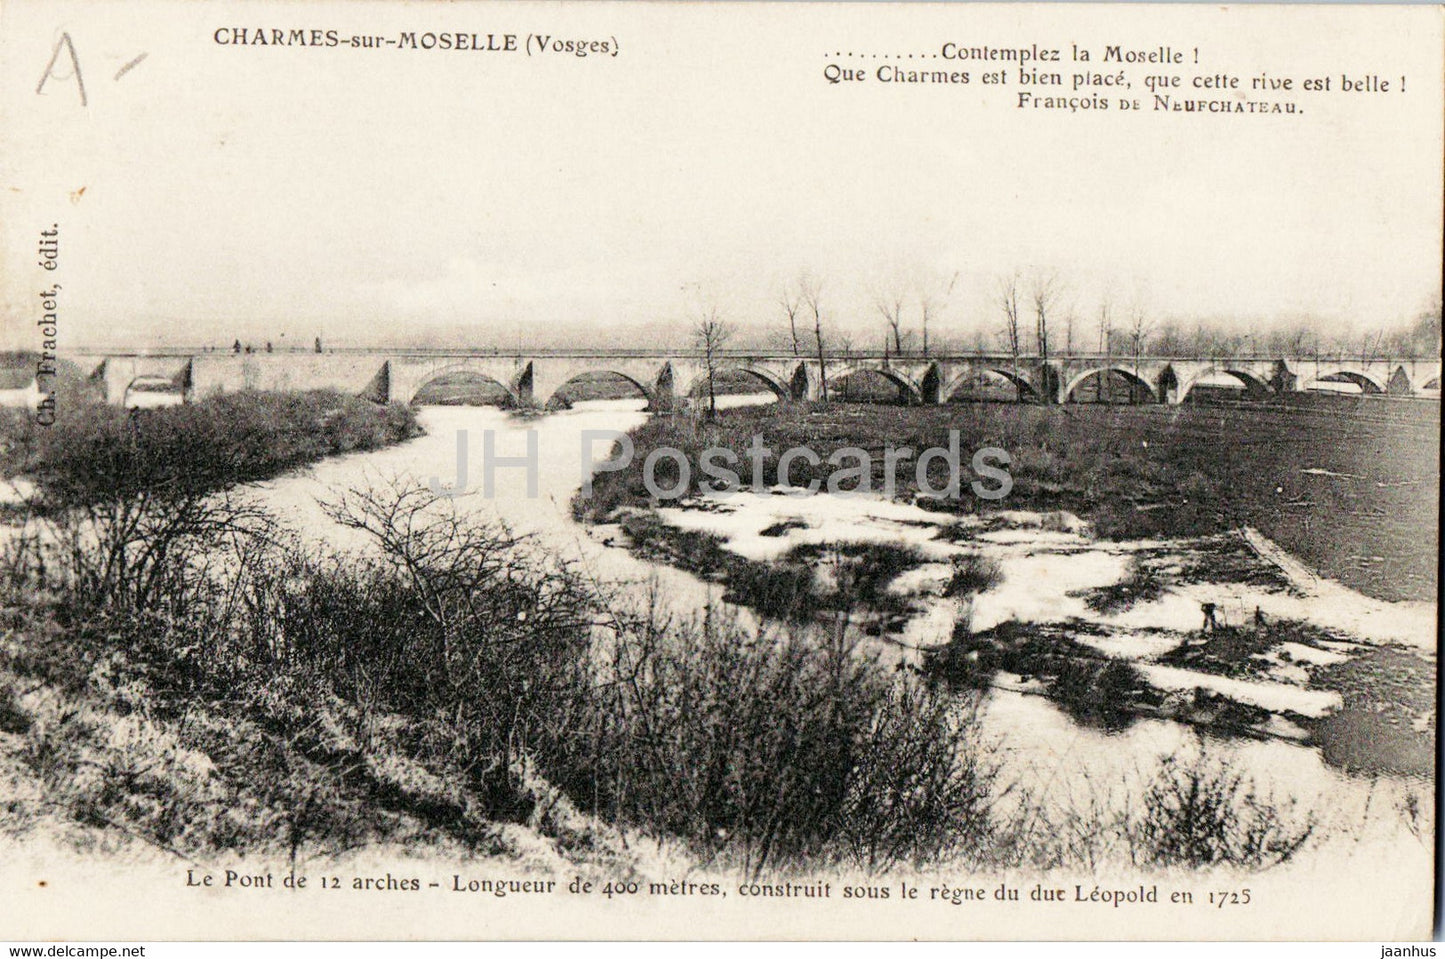 Charmes sur Moselle - Le Pont de 12 arches - Contemplez la Moselle - bridge - old postcard - France - used - JH Postcards